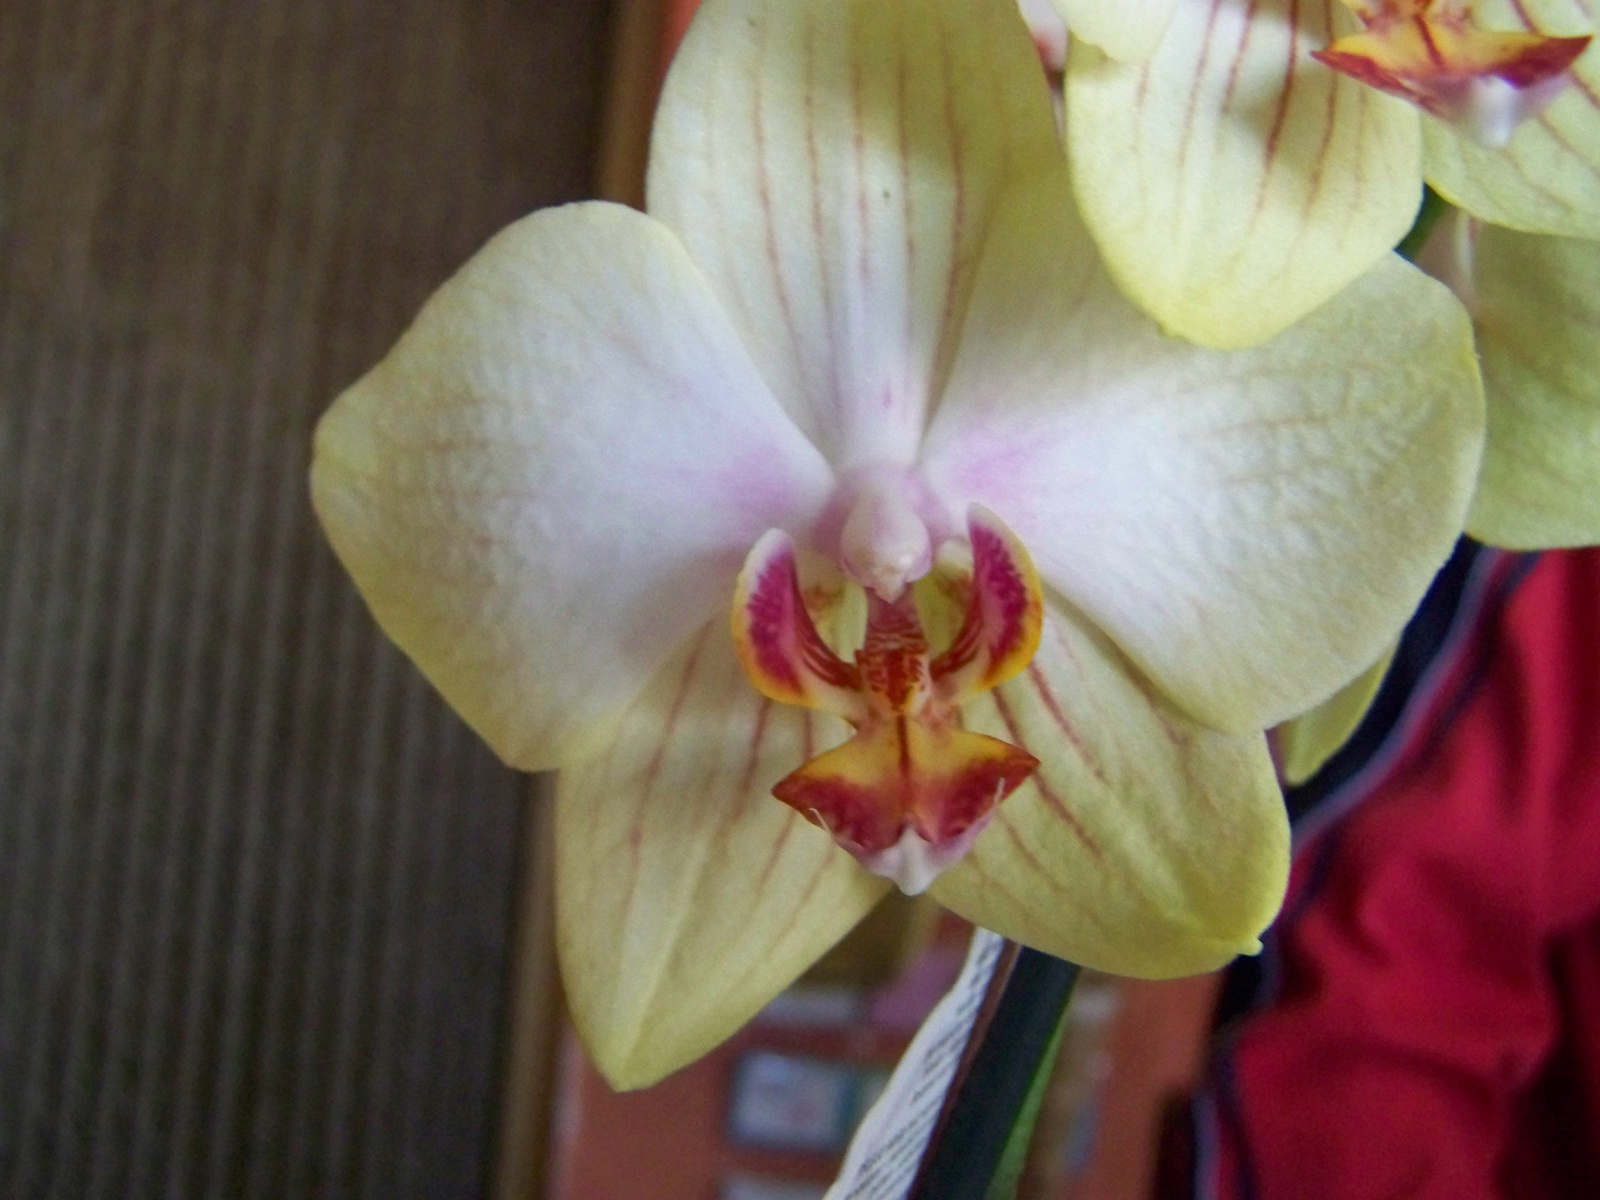 orchidea 0373